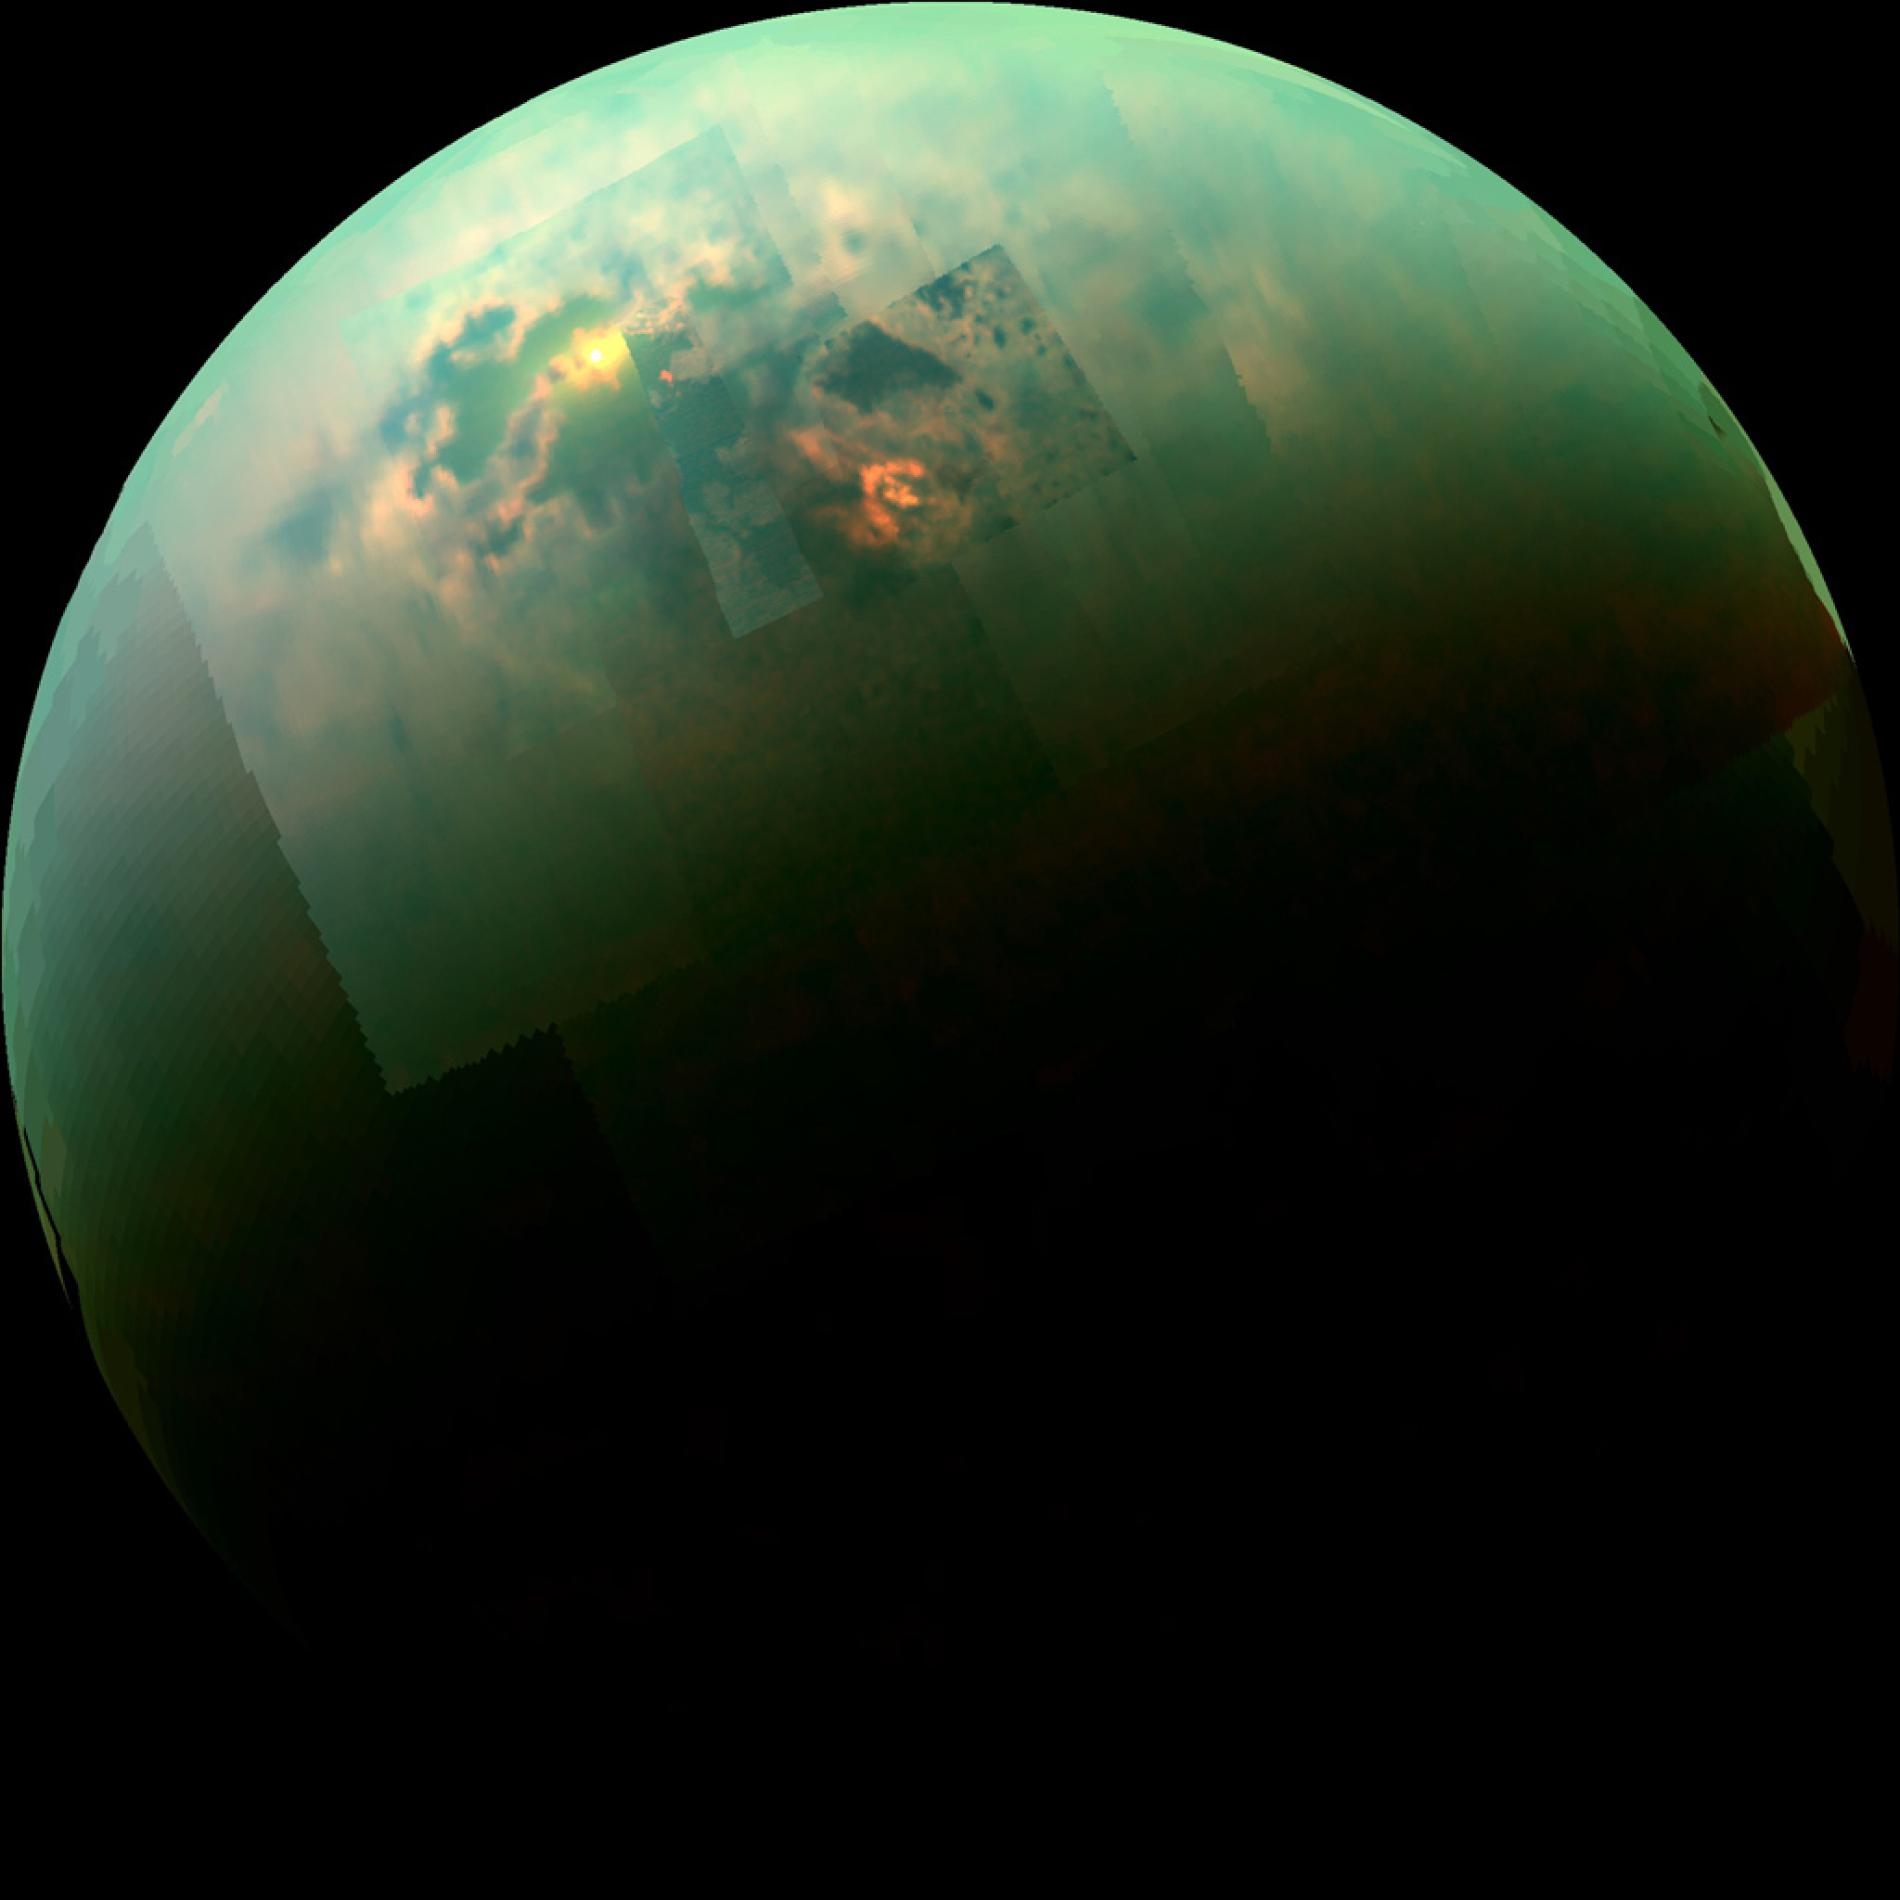 我們可以從美國航太總署（NASA）卡西尼號（Cassini）太空船傳回的這張近紅外波段彩色拼接影像中，看到泰坦的北極海域閃爍著陽光。根據目前地球上正在進行的研究顯示，當這些由液態碳氫化合物構成的寒冷海洋蒸發時，可能會留下不尋常的微小有機化合物混合結晶顆粒。IMAGE BY NASA/JPL-CALTECH/UNIVERSITY OF ARIZONA/UNIVERSITY OF IDAHO